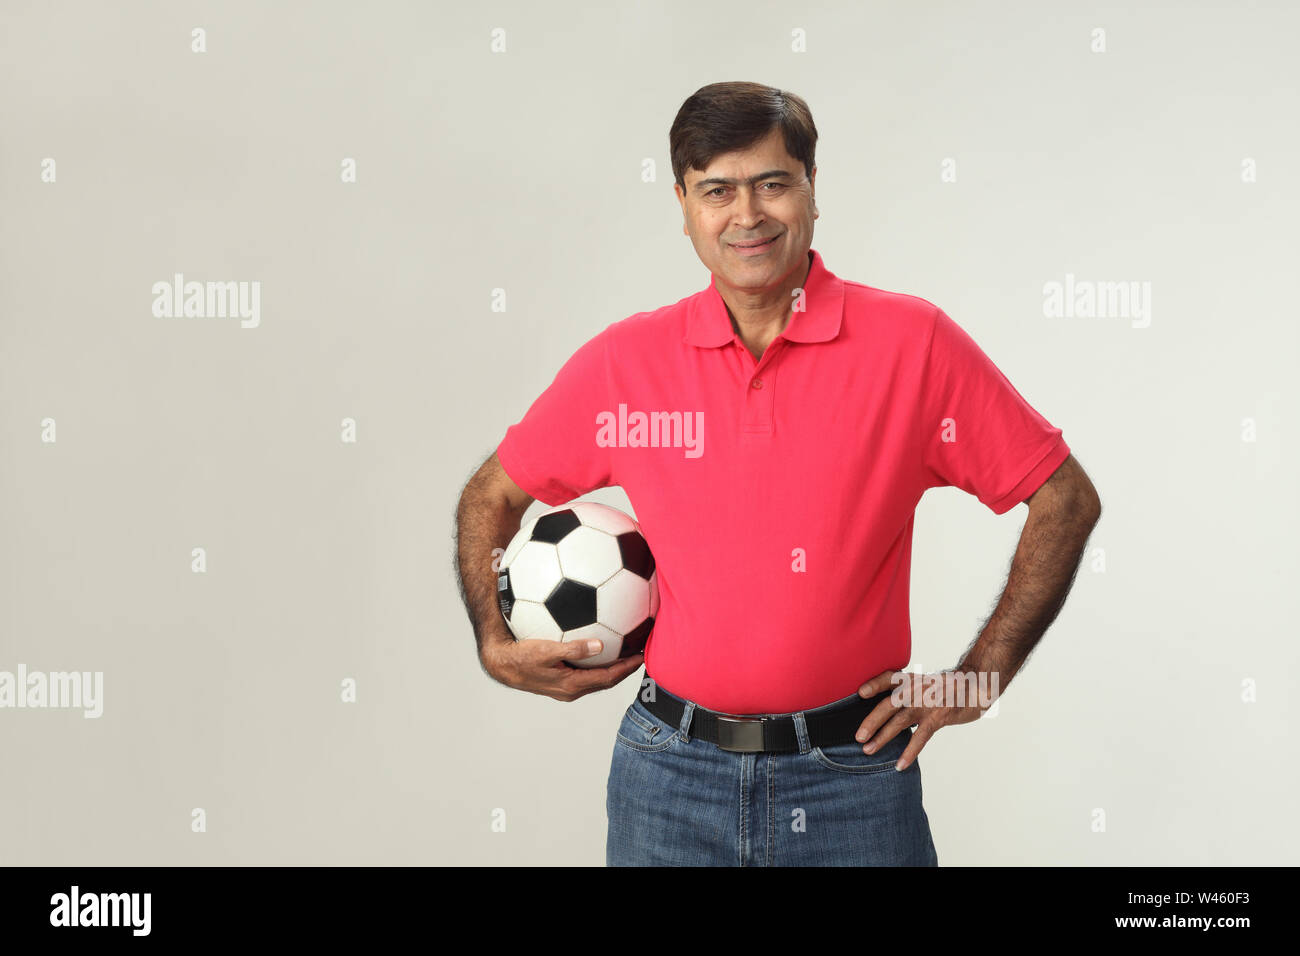 Porträt eines Mannes hält einen Fußball und lächelnd Stockfoto